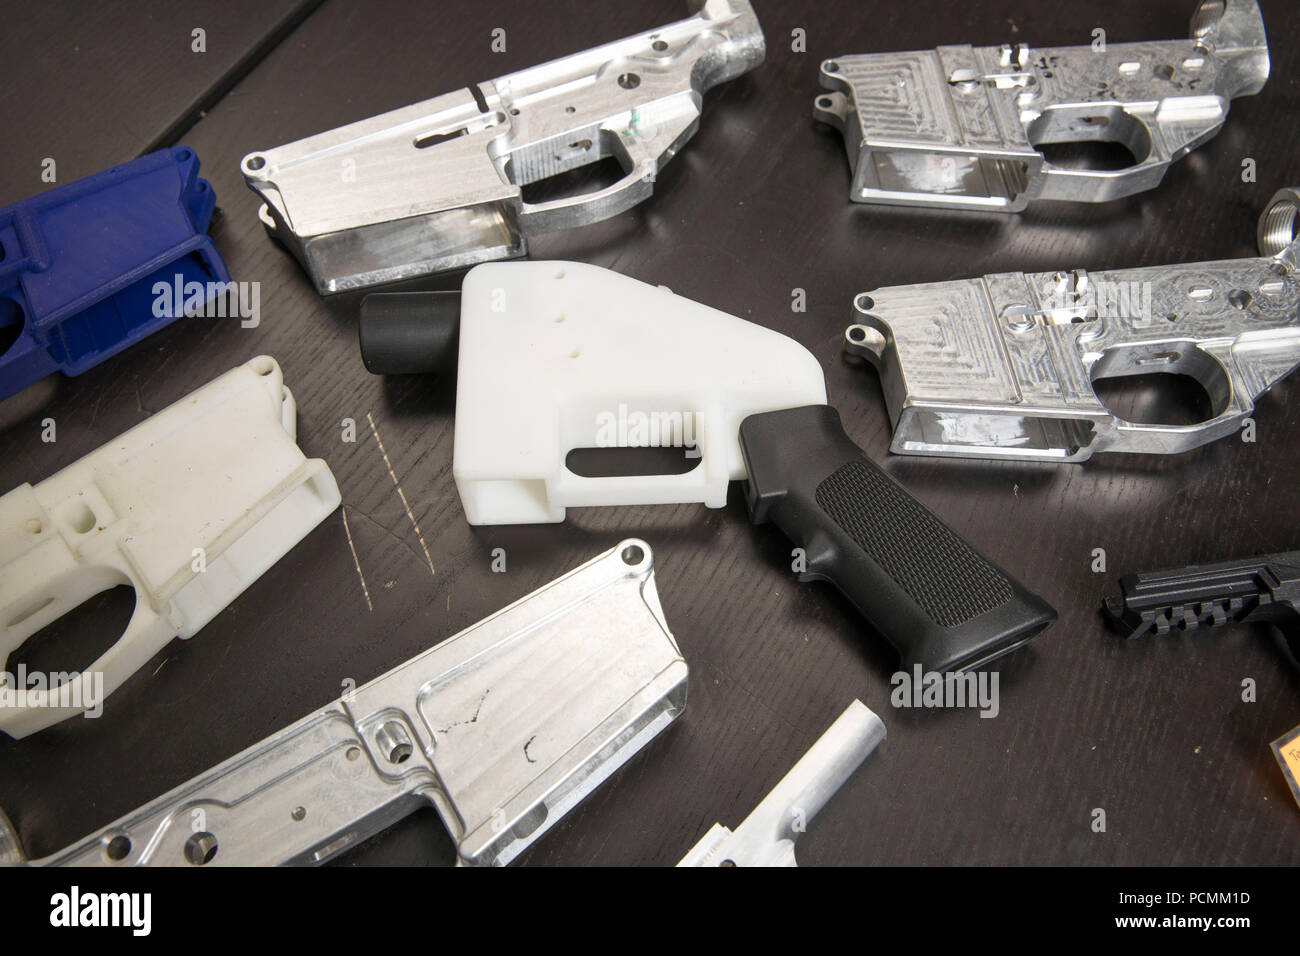 Le plastique et le métal gun parts Distribution, une défense à Austin,  Texas, et en développement de l'entreprise open source d'édition Modèles  des armes à feu pour l'impression 3D et la fabrication,